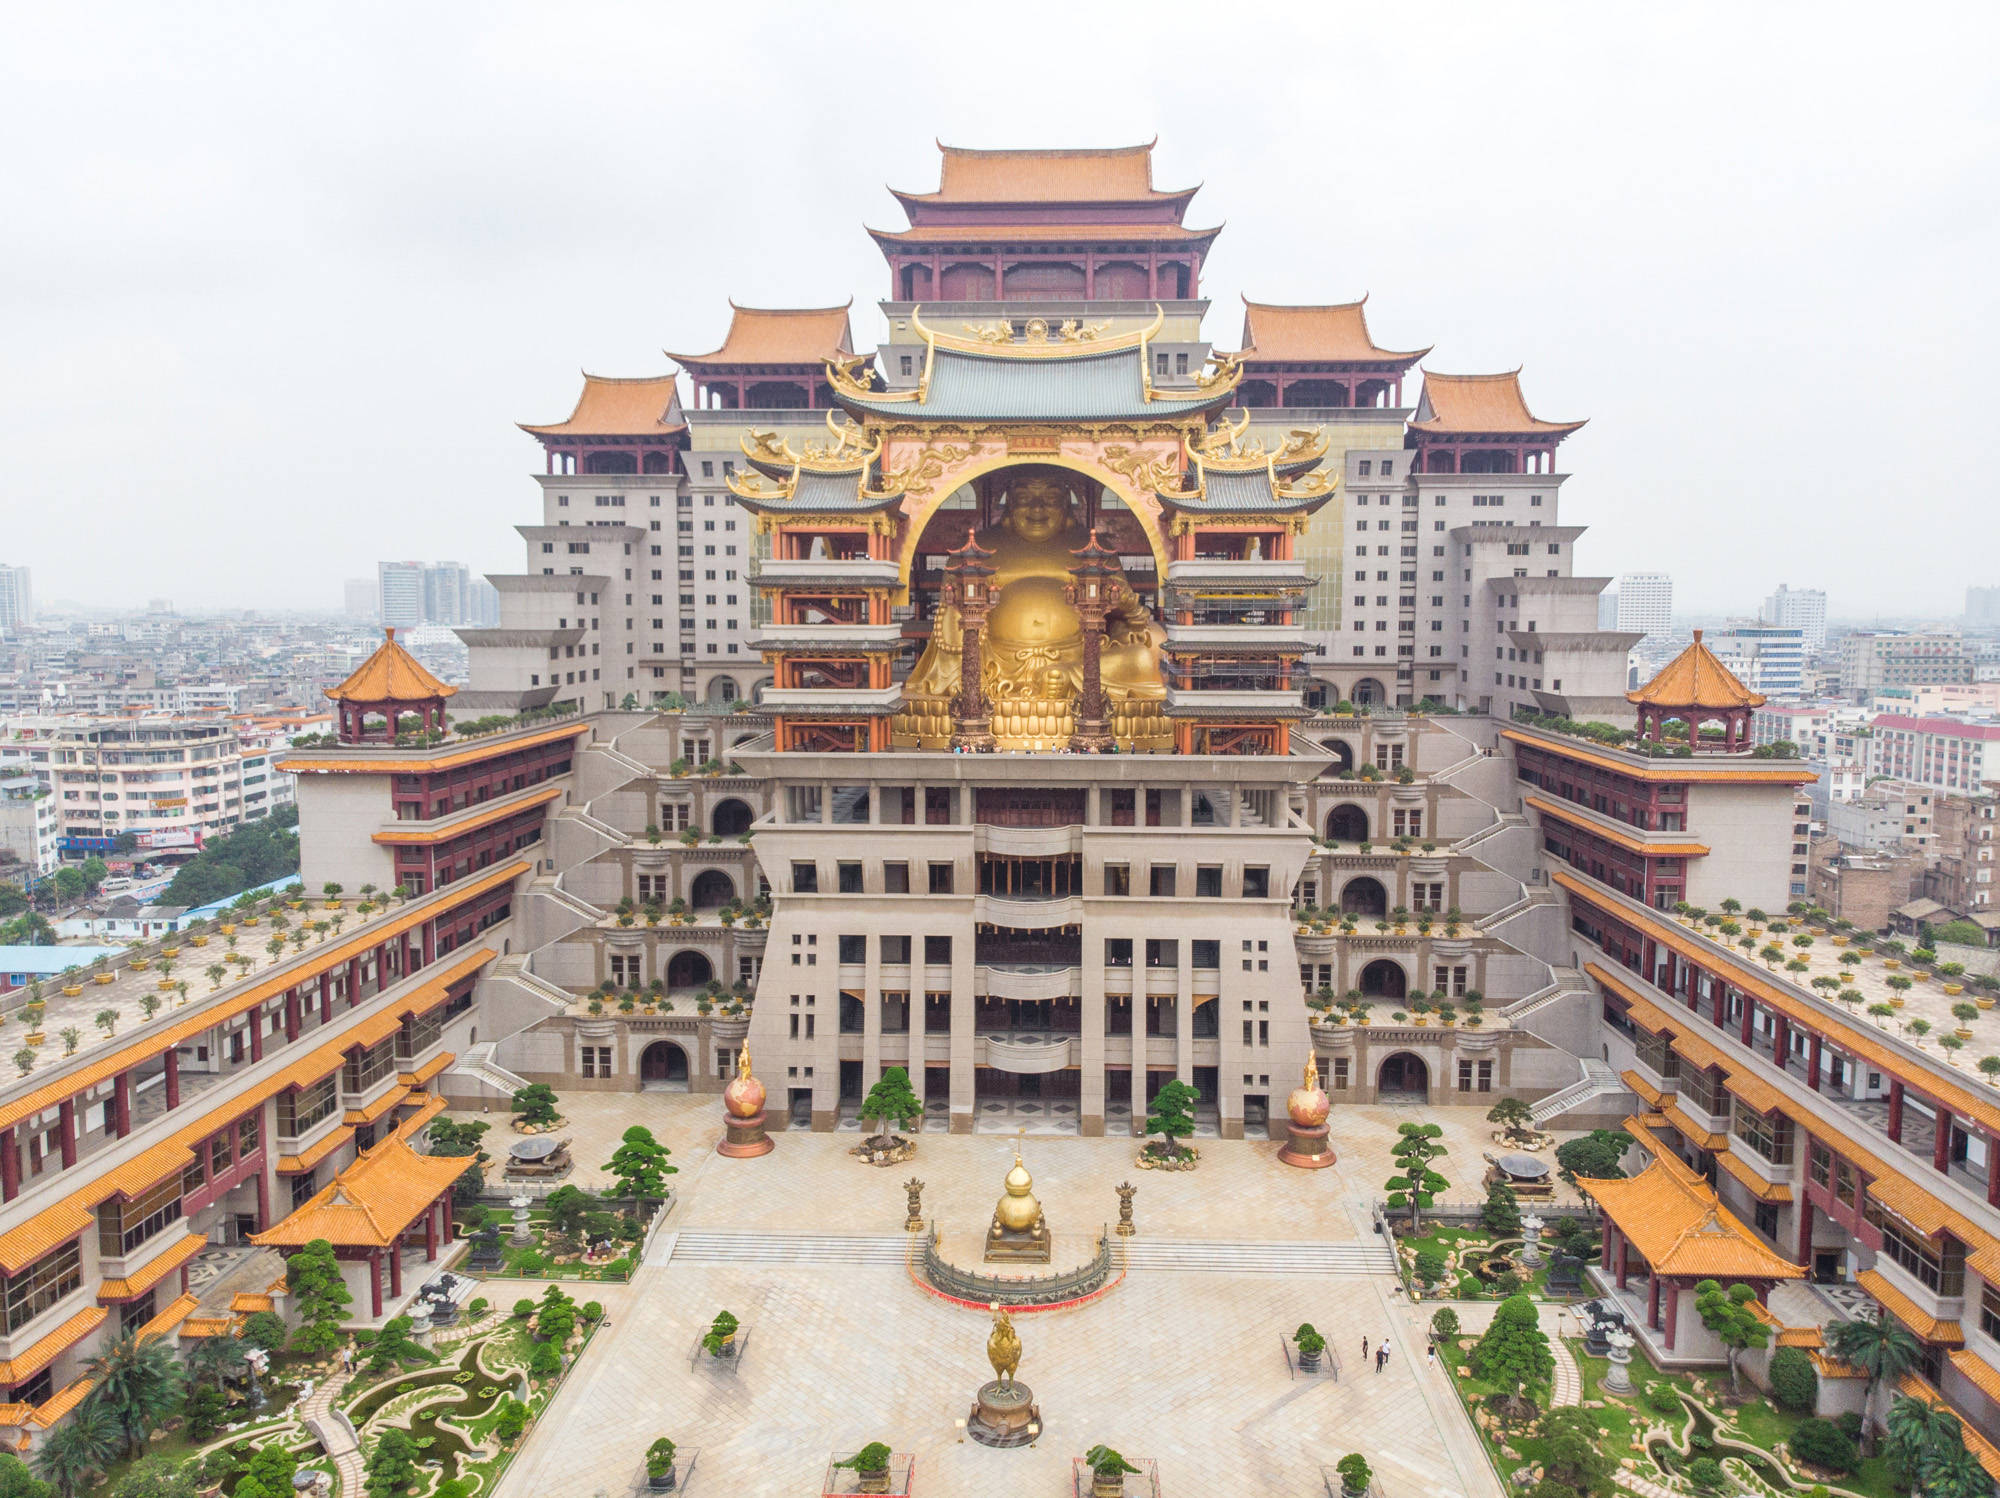 中国单体面积最大的建筑,就藏广西玉林,被誉为" 小布达拉宫"